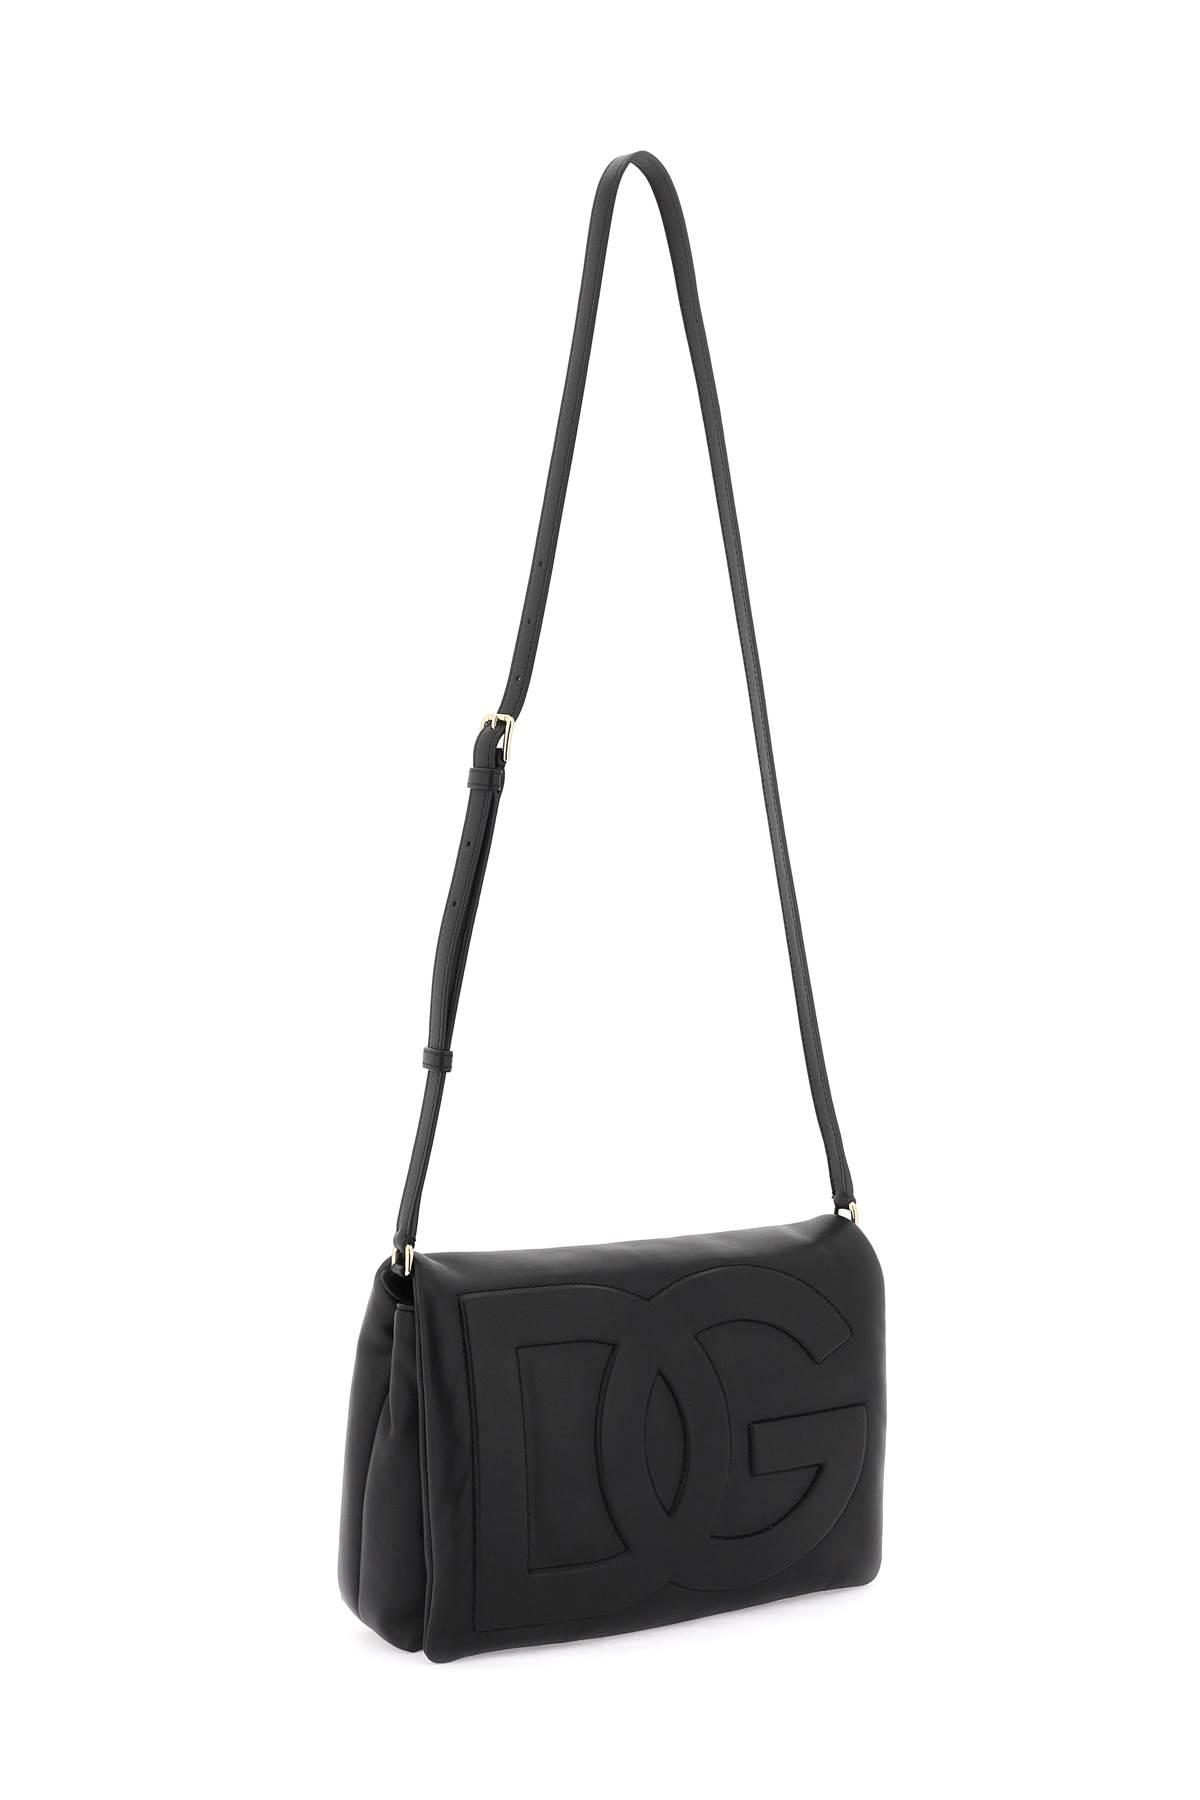 Dolce & Gabbana Dg Logo Crossbody Bag In Nappa Leather in Black